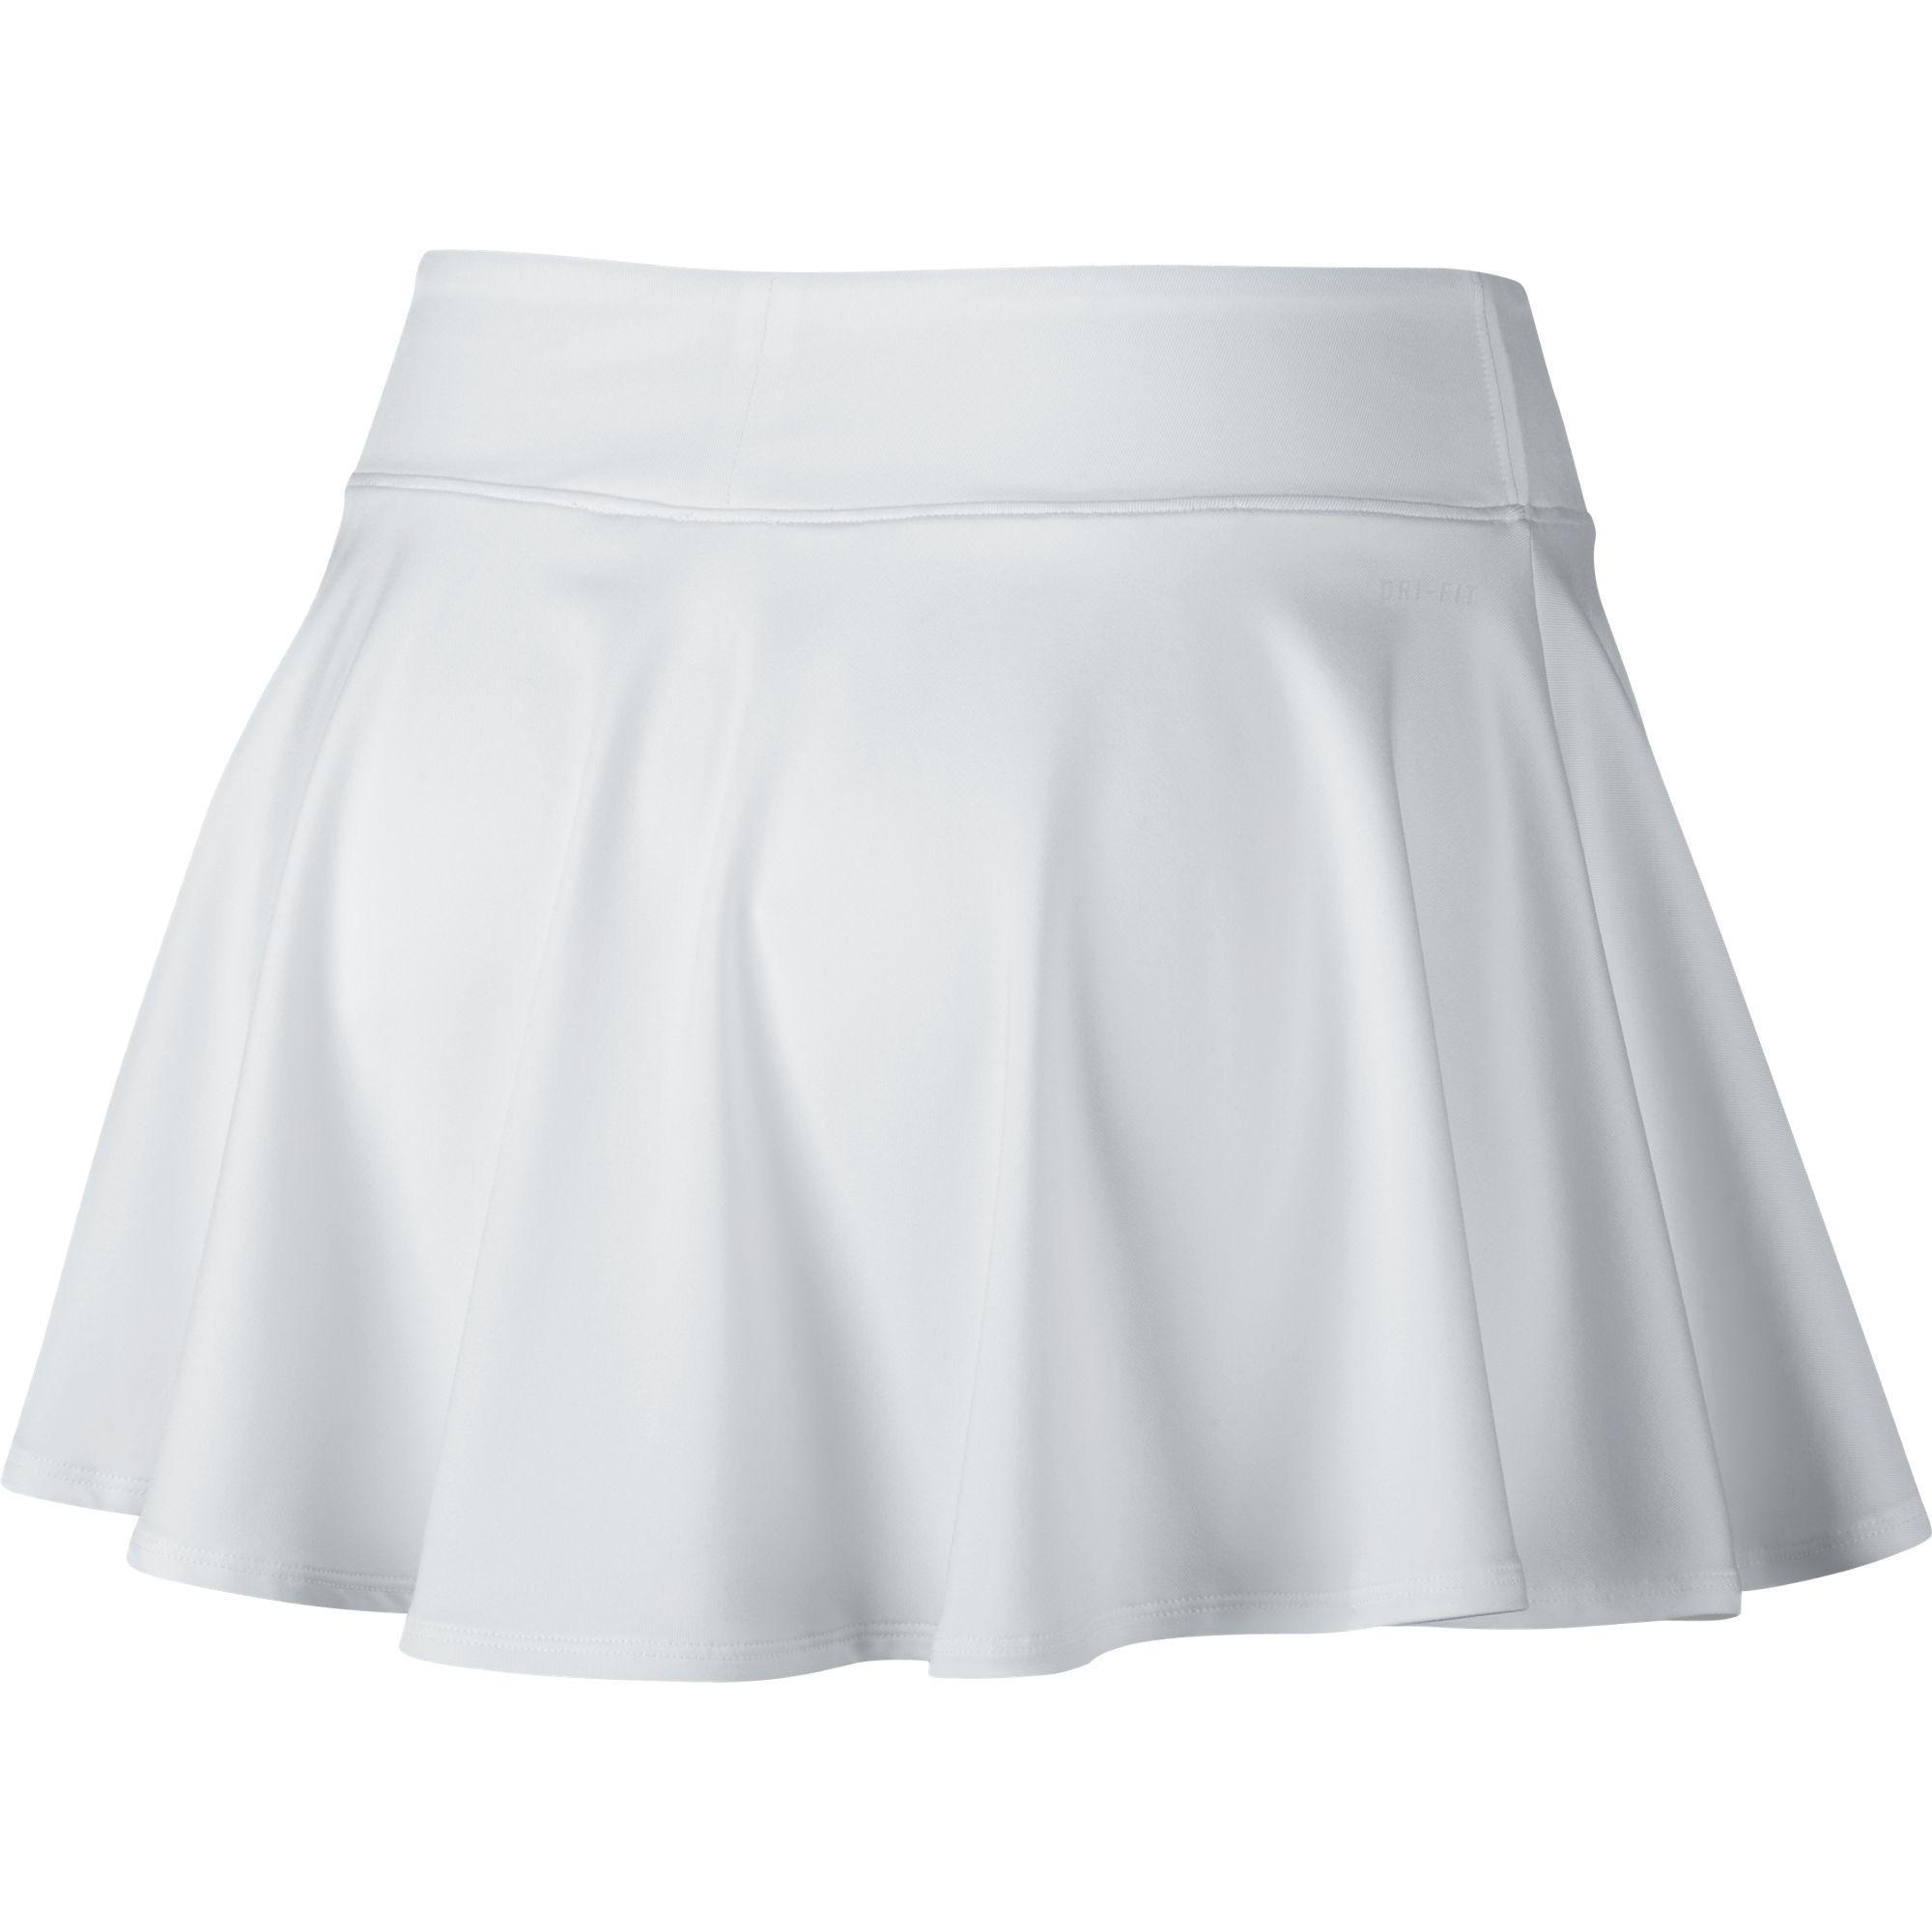 Теннисные юбки в школу. Юбка Nike ar2349-623. Теннисная юбка. Теннисная юбка для девочки. Теннисная юбка Школьная.